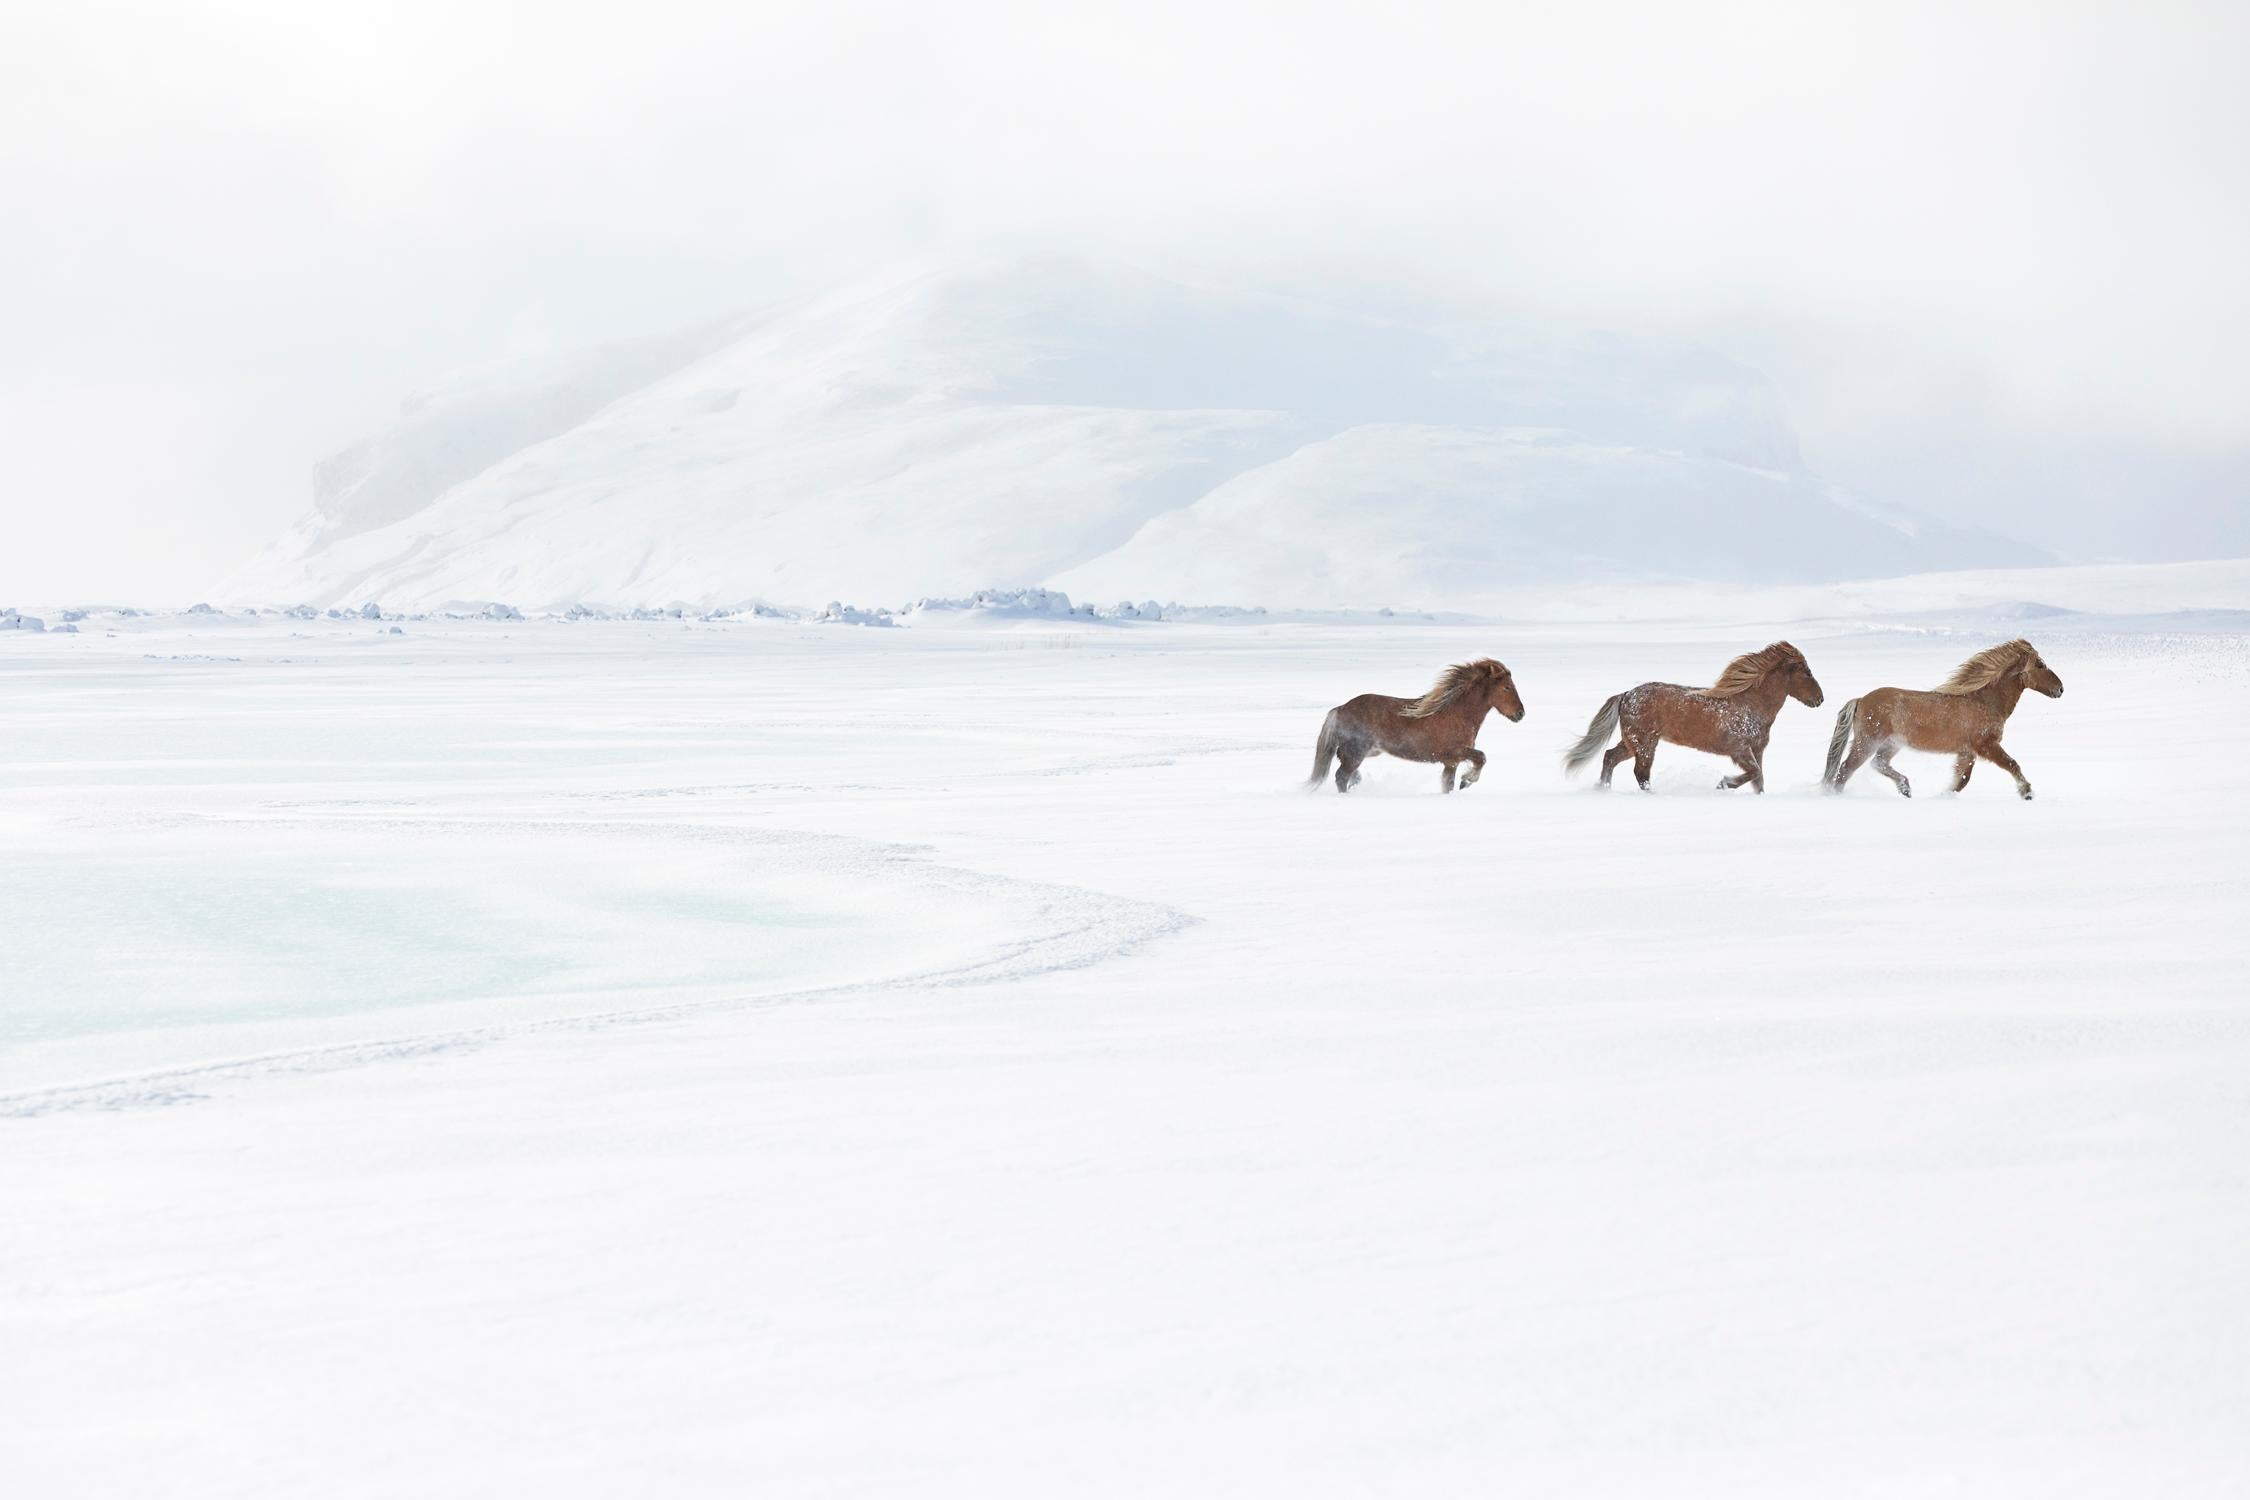 Color Photograph Drew Doggett - Trois chevaux islandais se déplacent rapidement dans la toundra hivernale